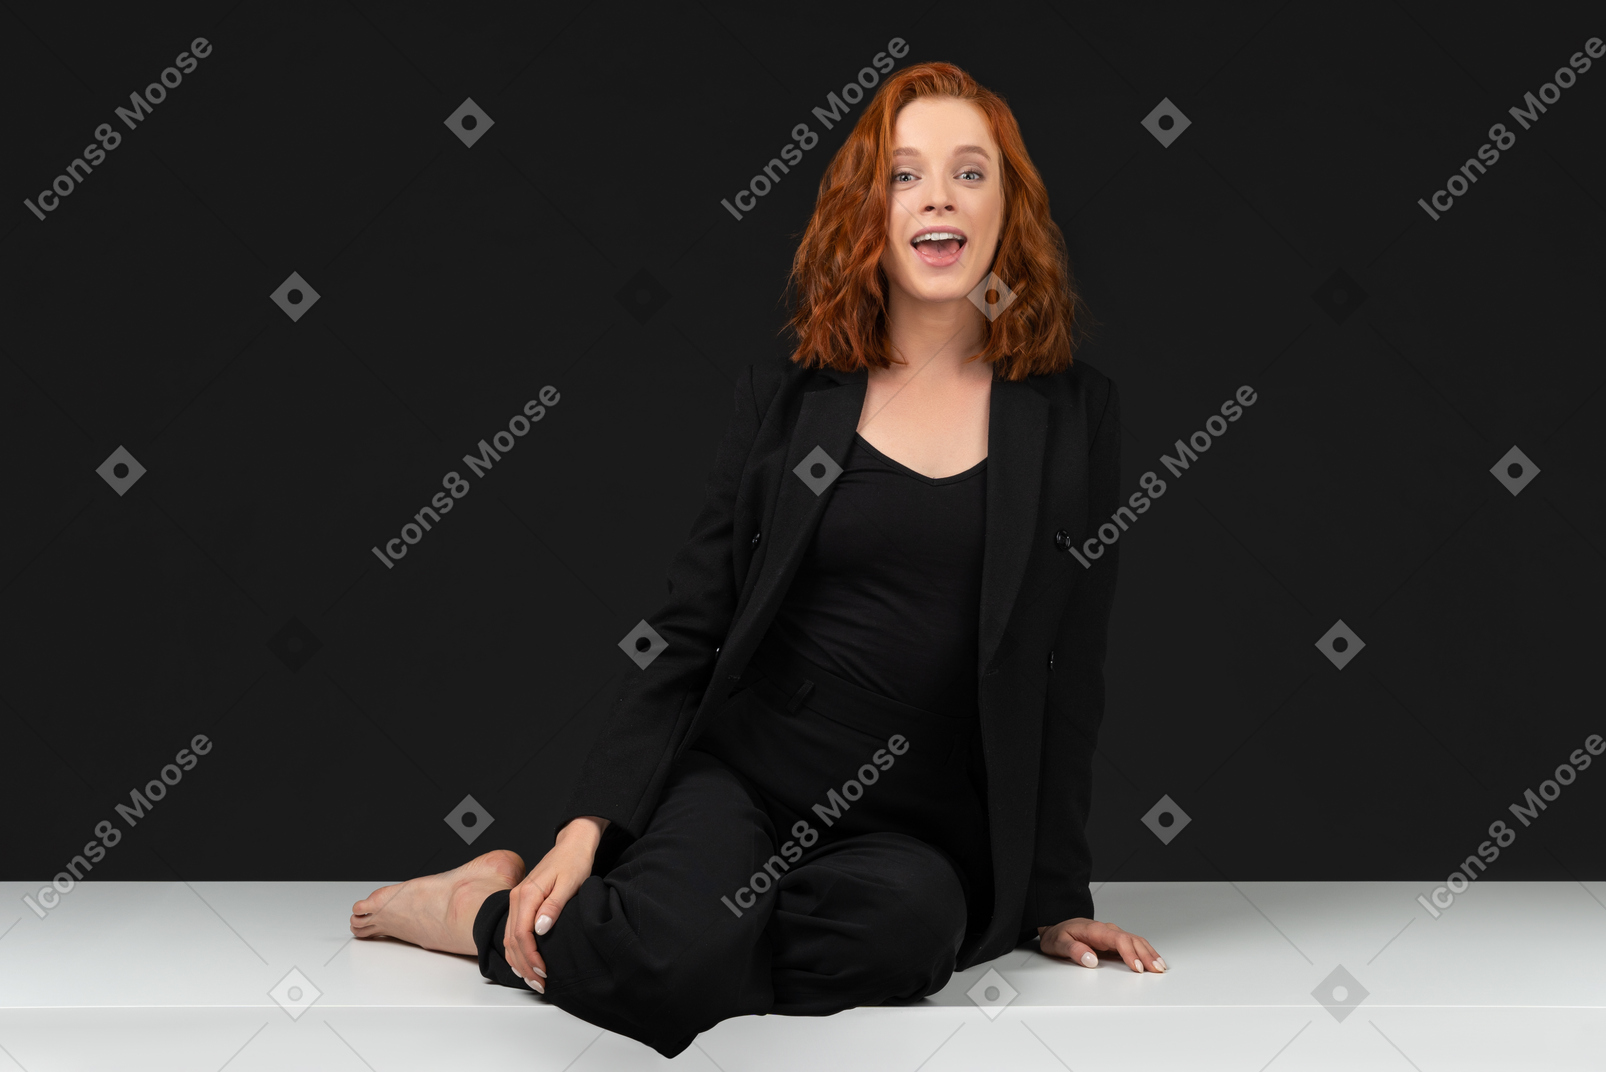 검은 옷을 입고 흰색 테이블에 앉아있는 귀여운 빨간 머리 소녀의 정면보기